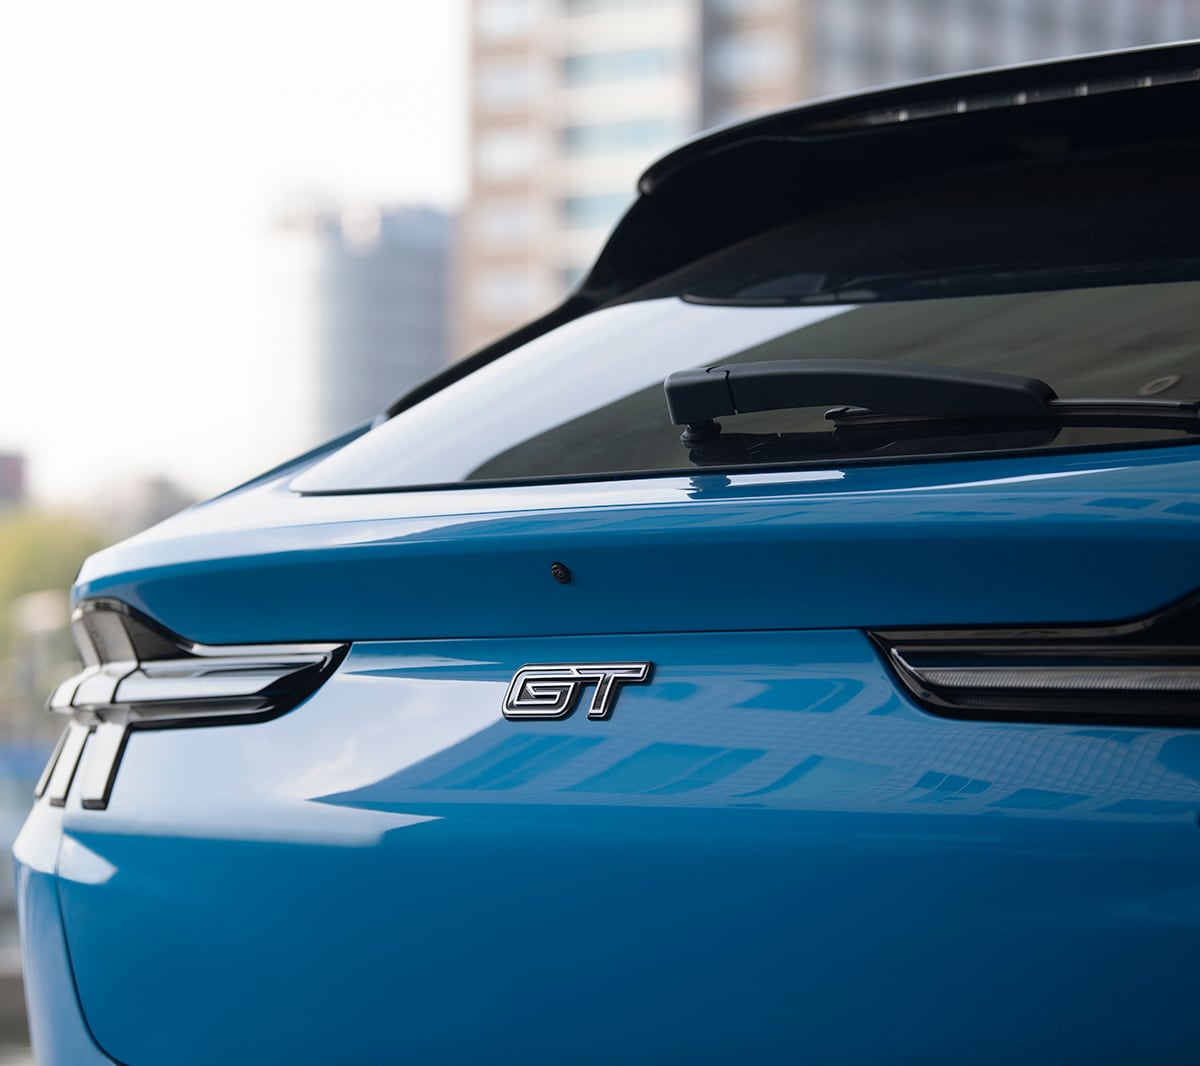 Ford Mustang Mach-E GT blu. Vista posteriore con dettaglio dell’emblema GT.